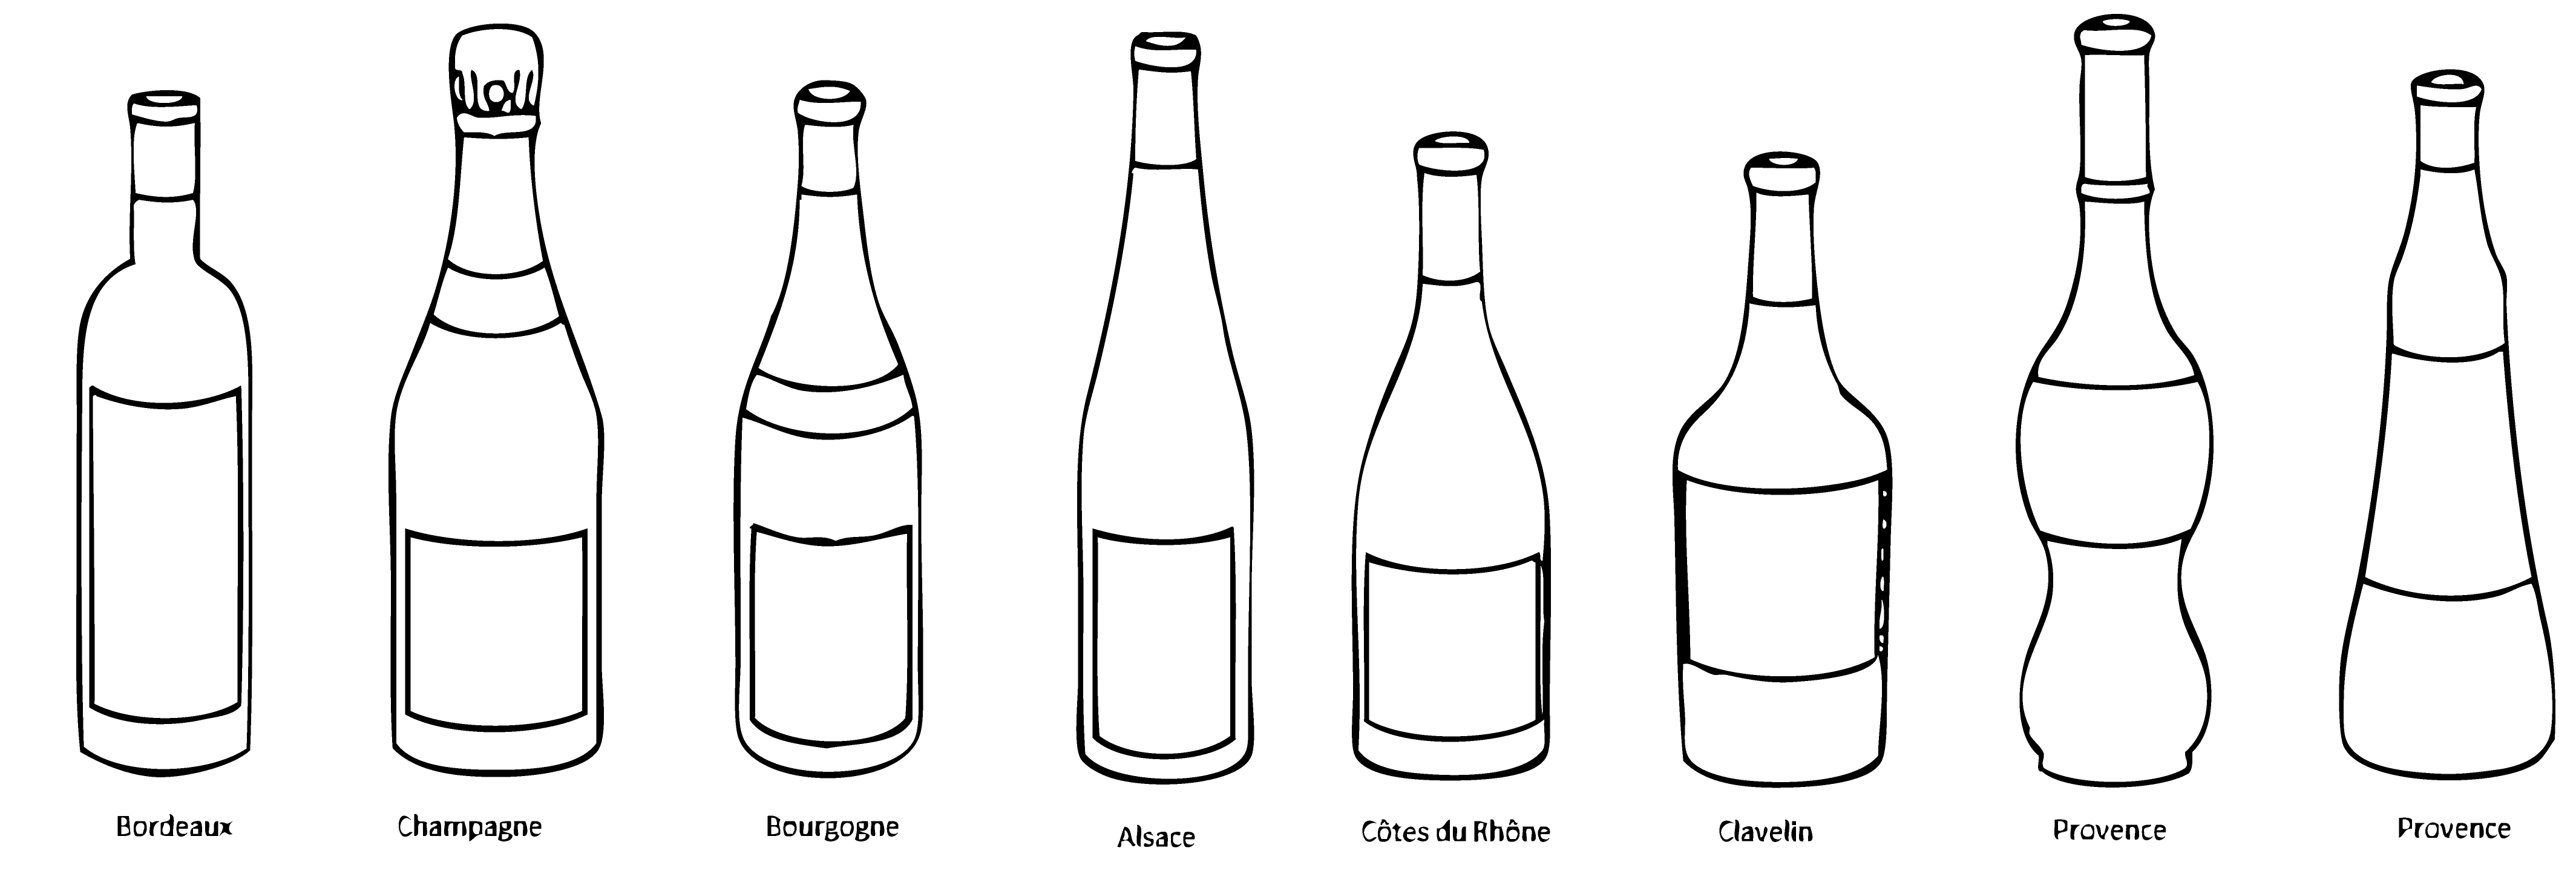 Pourquoi les bouteilles de vin n'ont-elles pas toutes la même forme ?